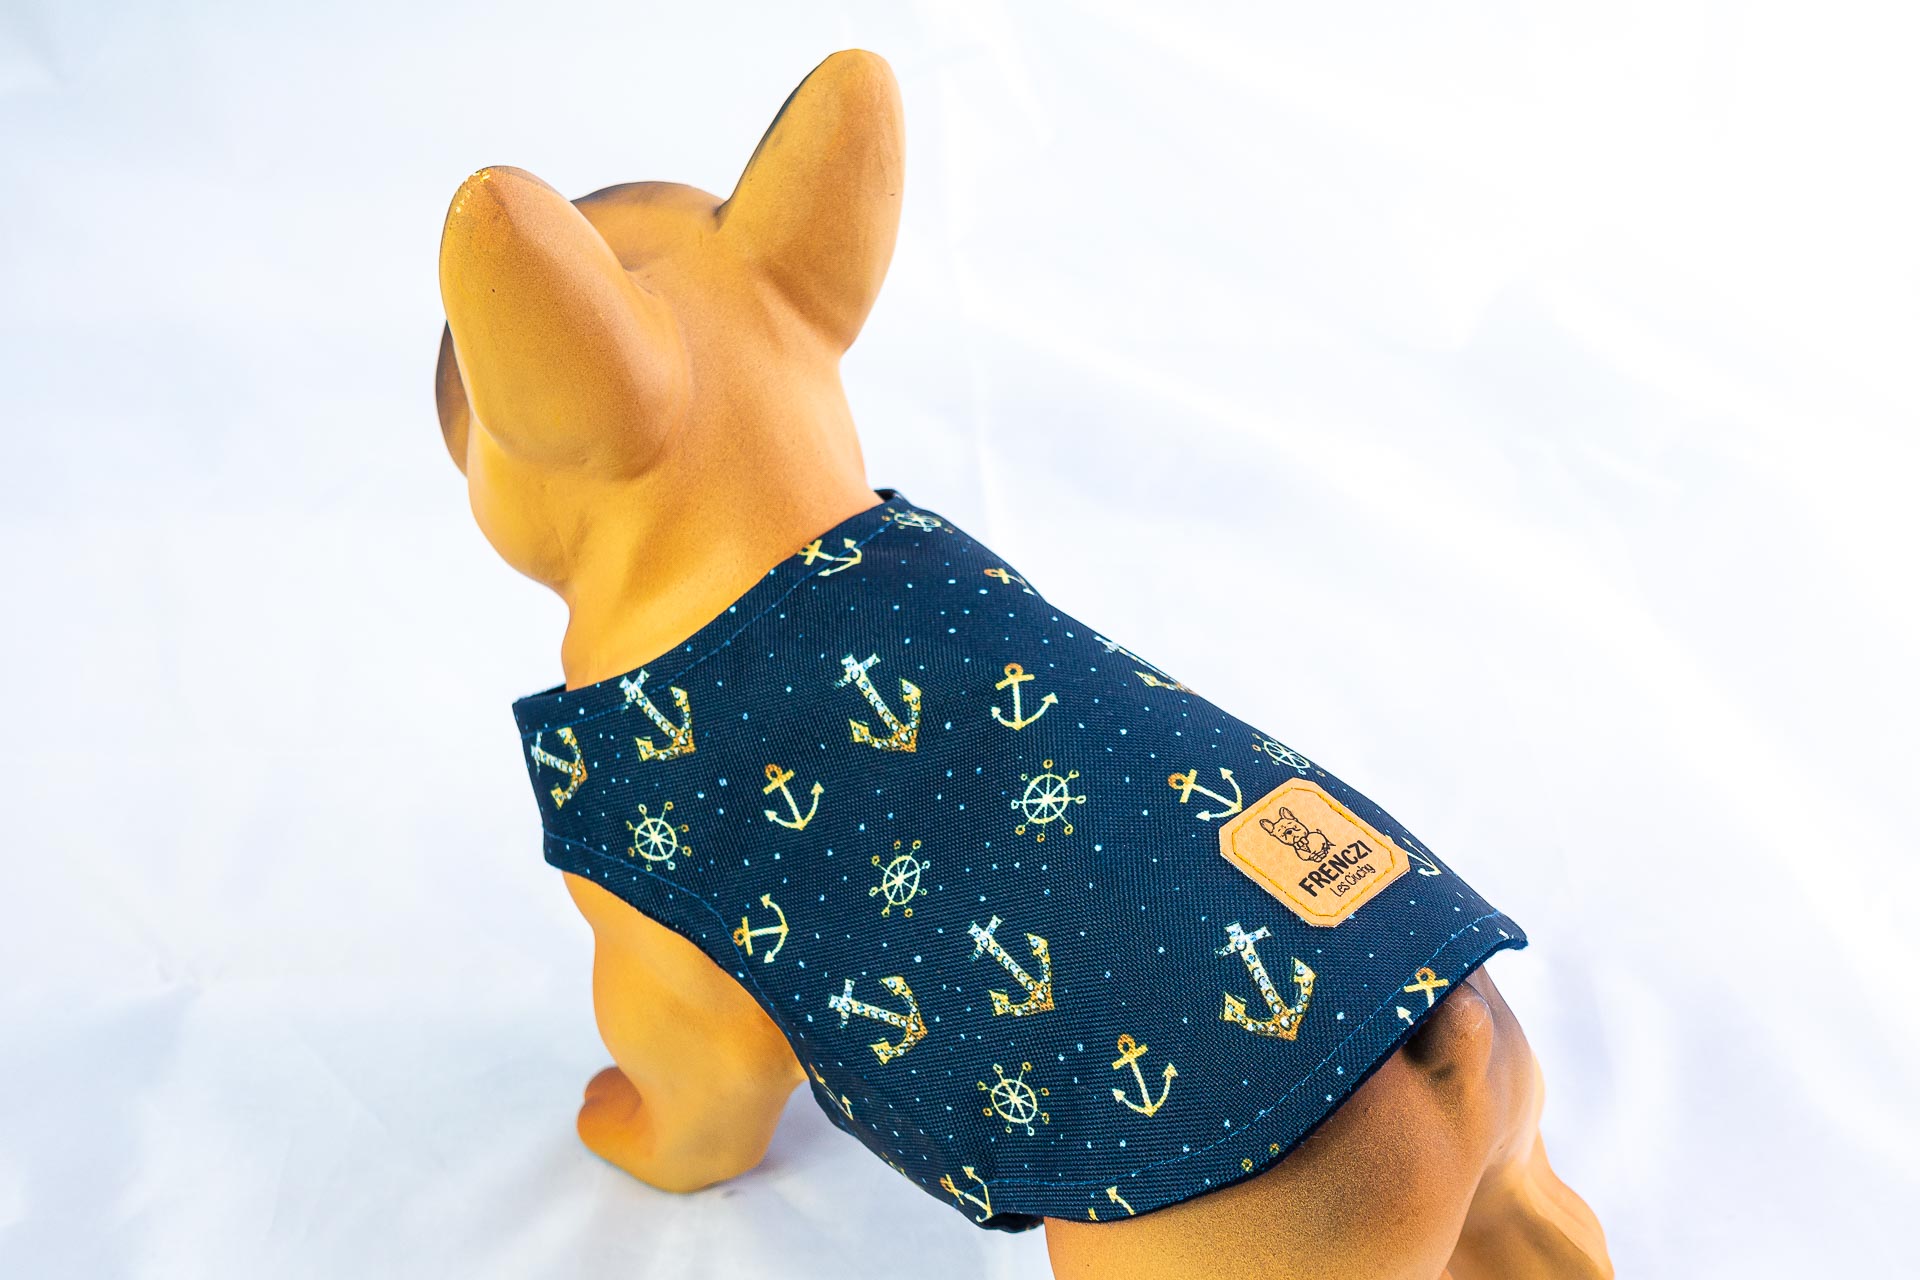 Kurtka przeciwdeszczowa dla psa marki Frenczi. Zdjęcie ubranka dla psa na miarę. Wzór Marine